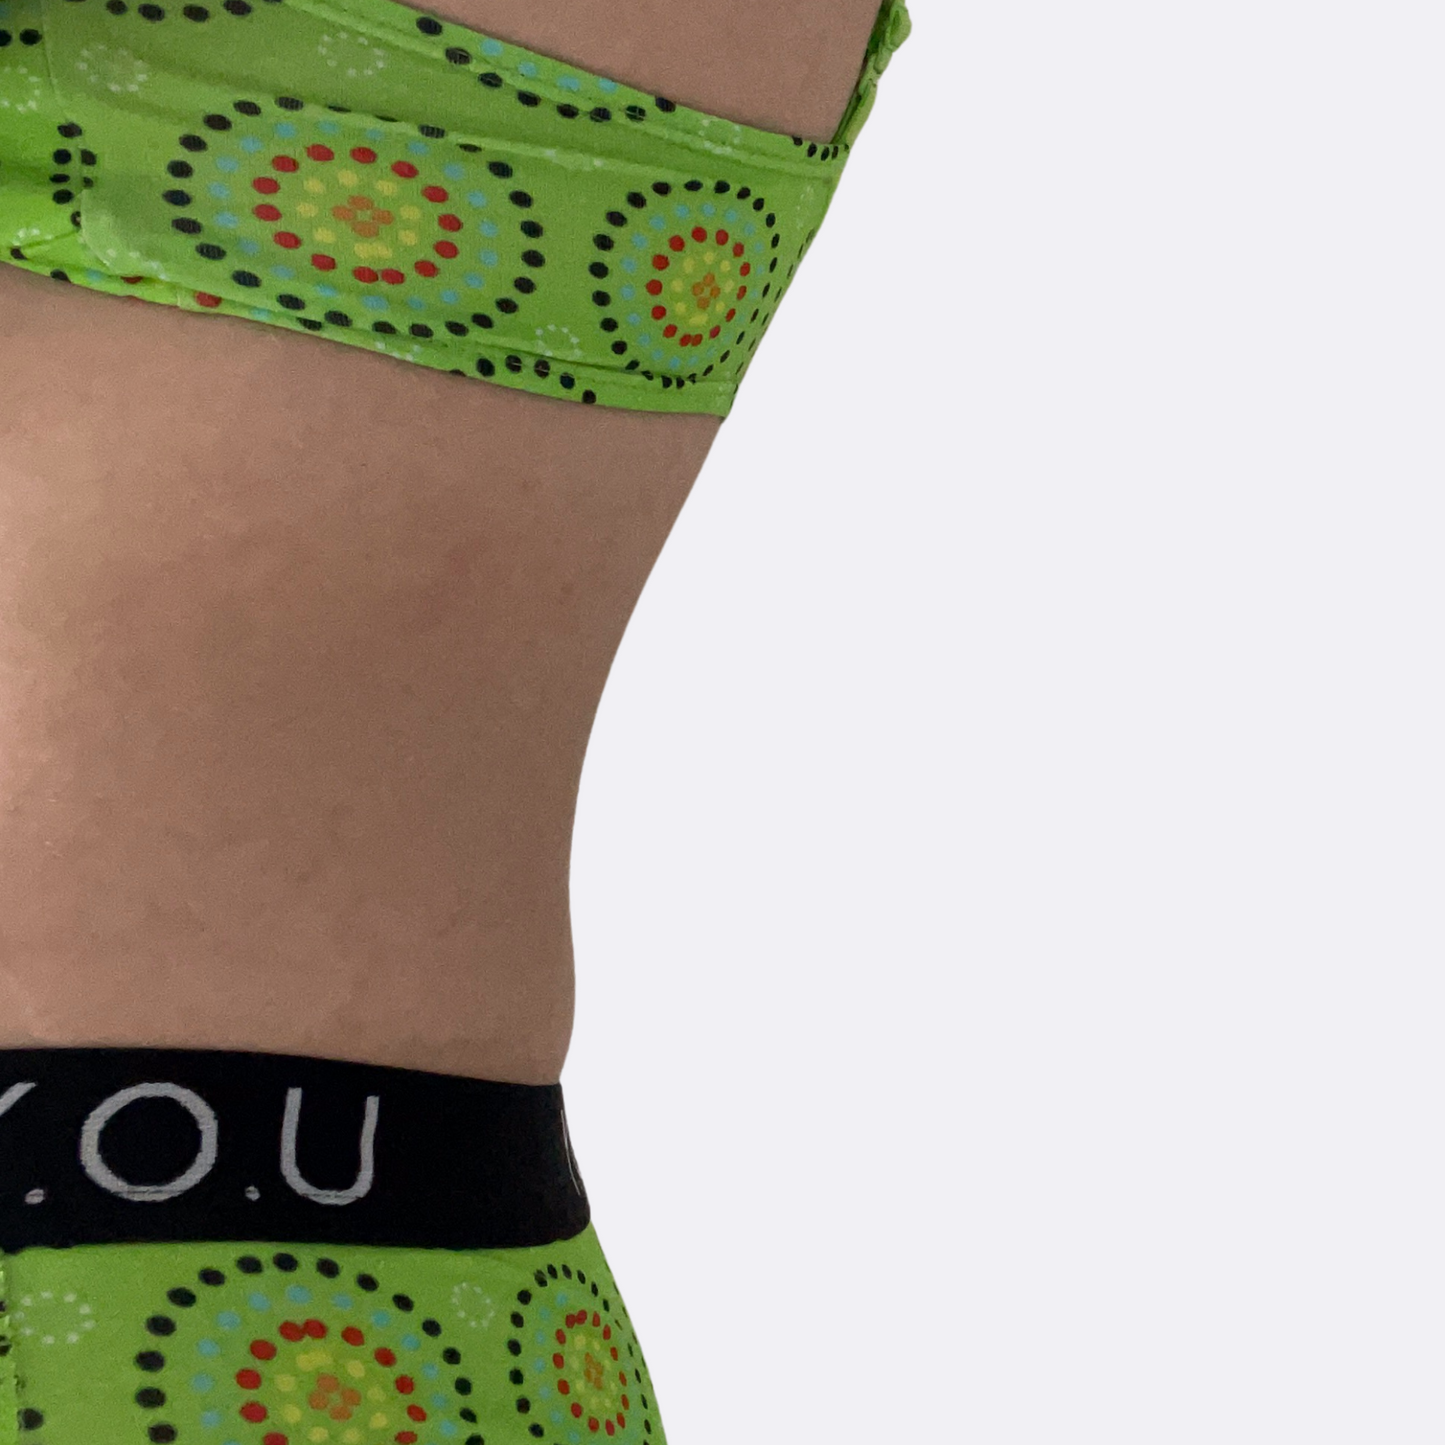 Women’s organic cotton boy shorts with Y.O.U elastic - Mara design - Pack of 5